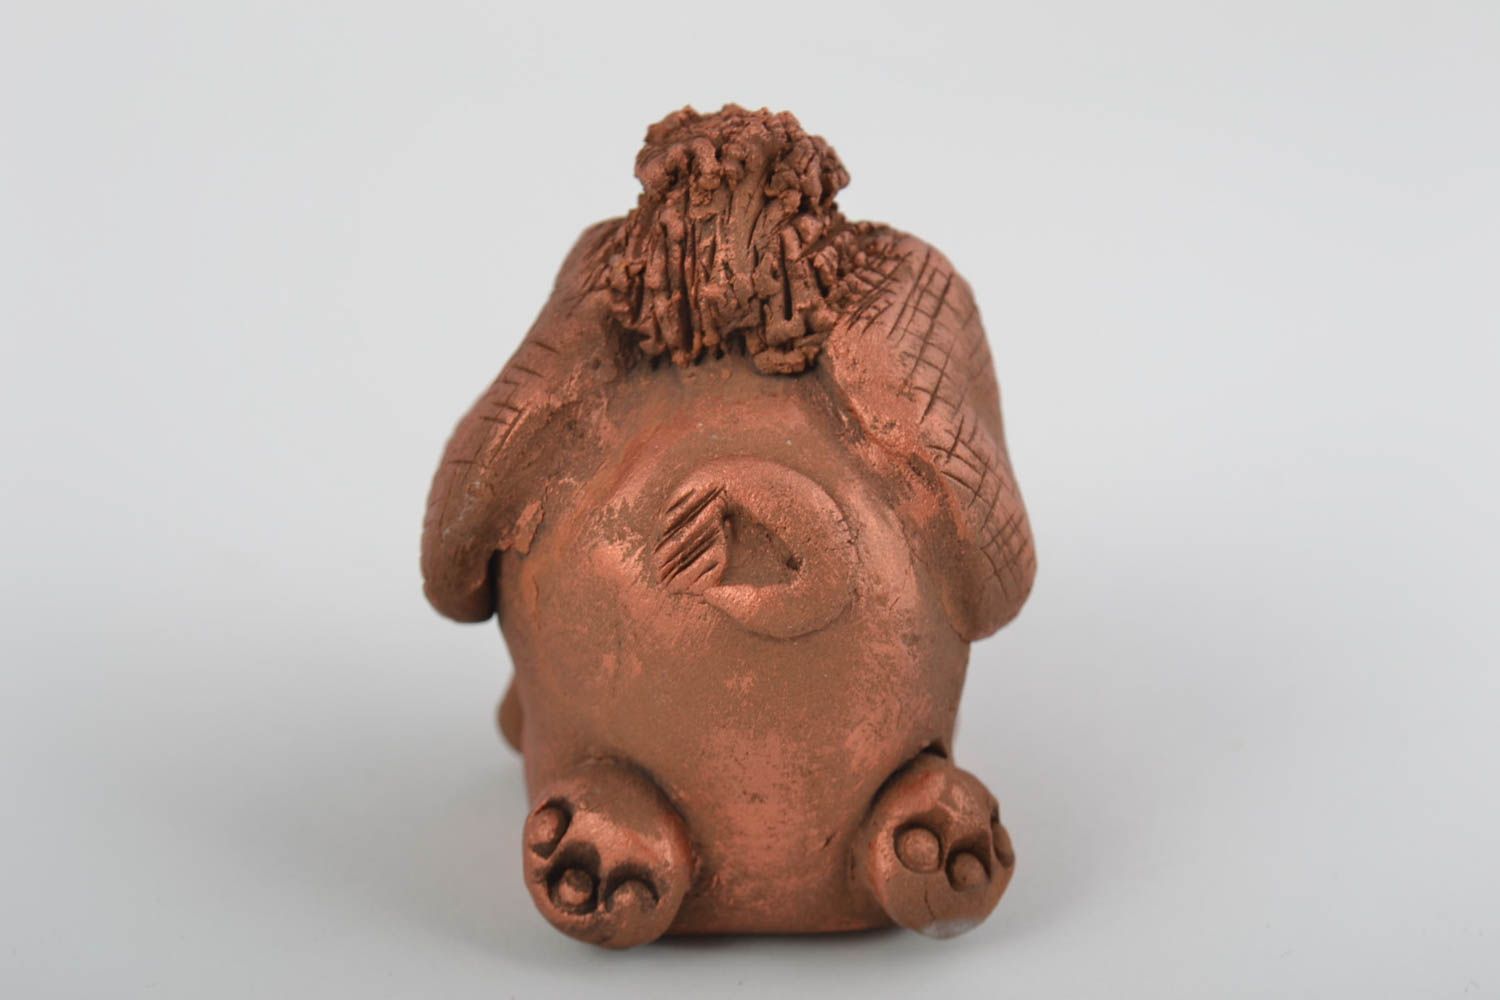 Декоративная глиняная фигурка в виде слоника расписанного акрилом ручной работы фото 3